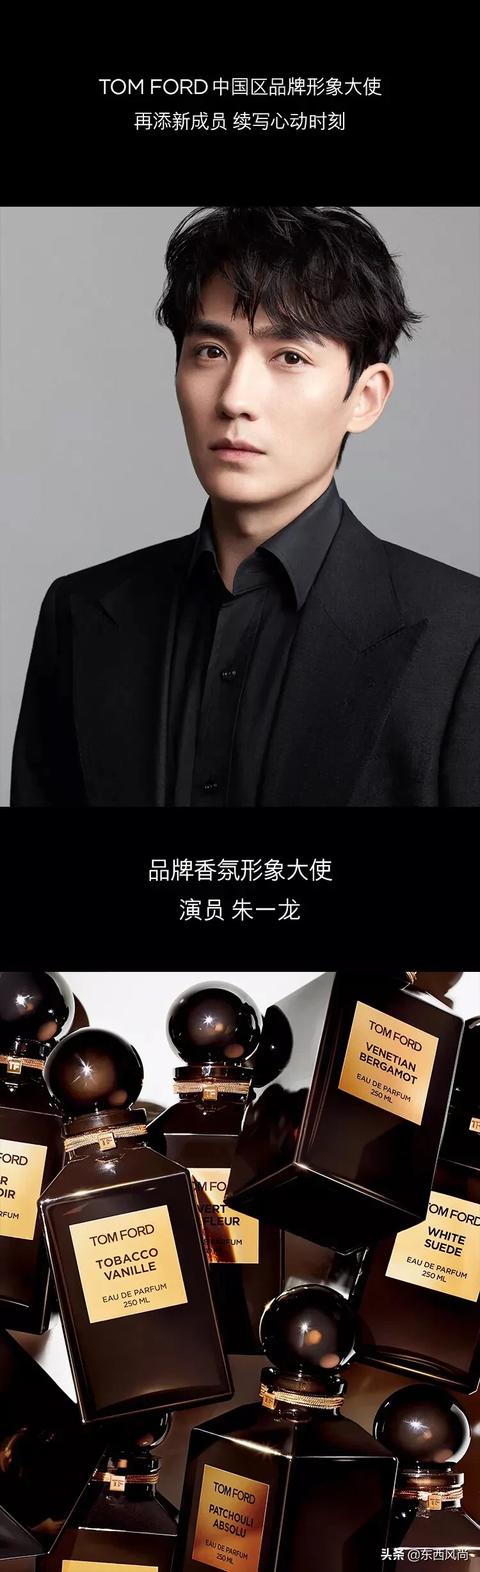 朱一龙成为TOM FORD 中国区品牌形象大使_布勒斯